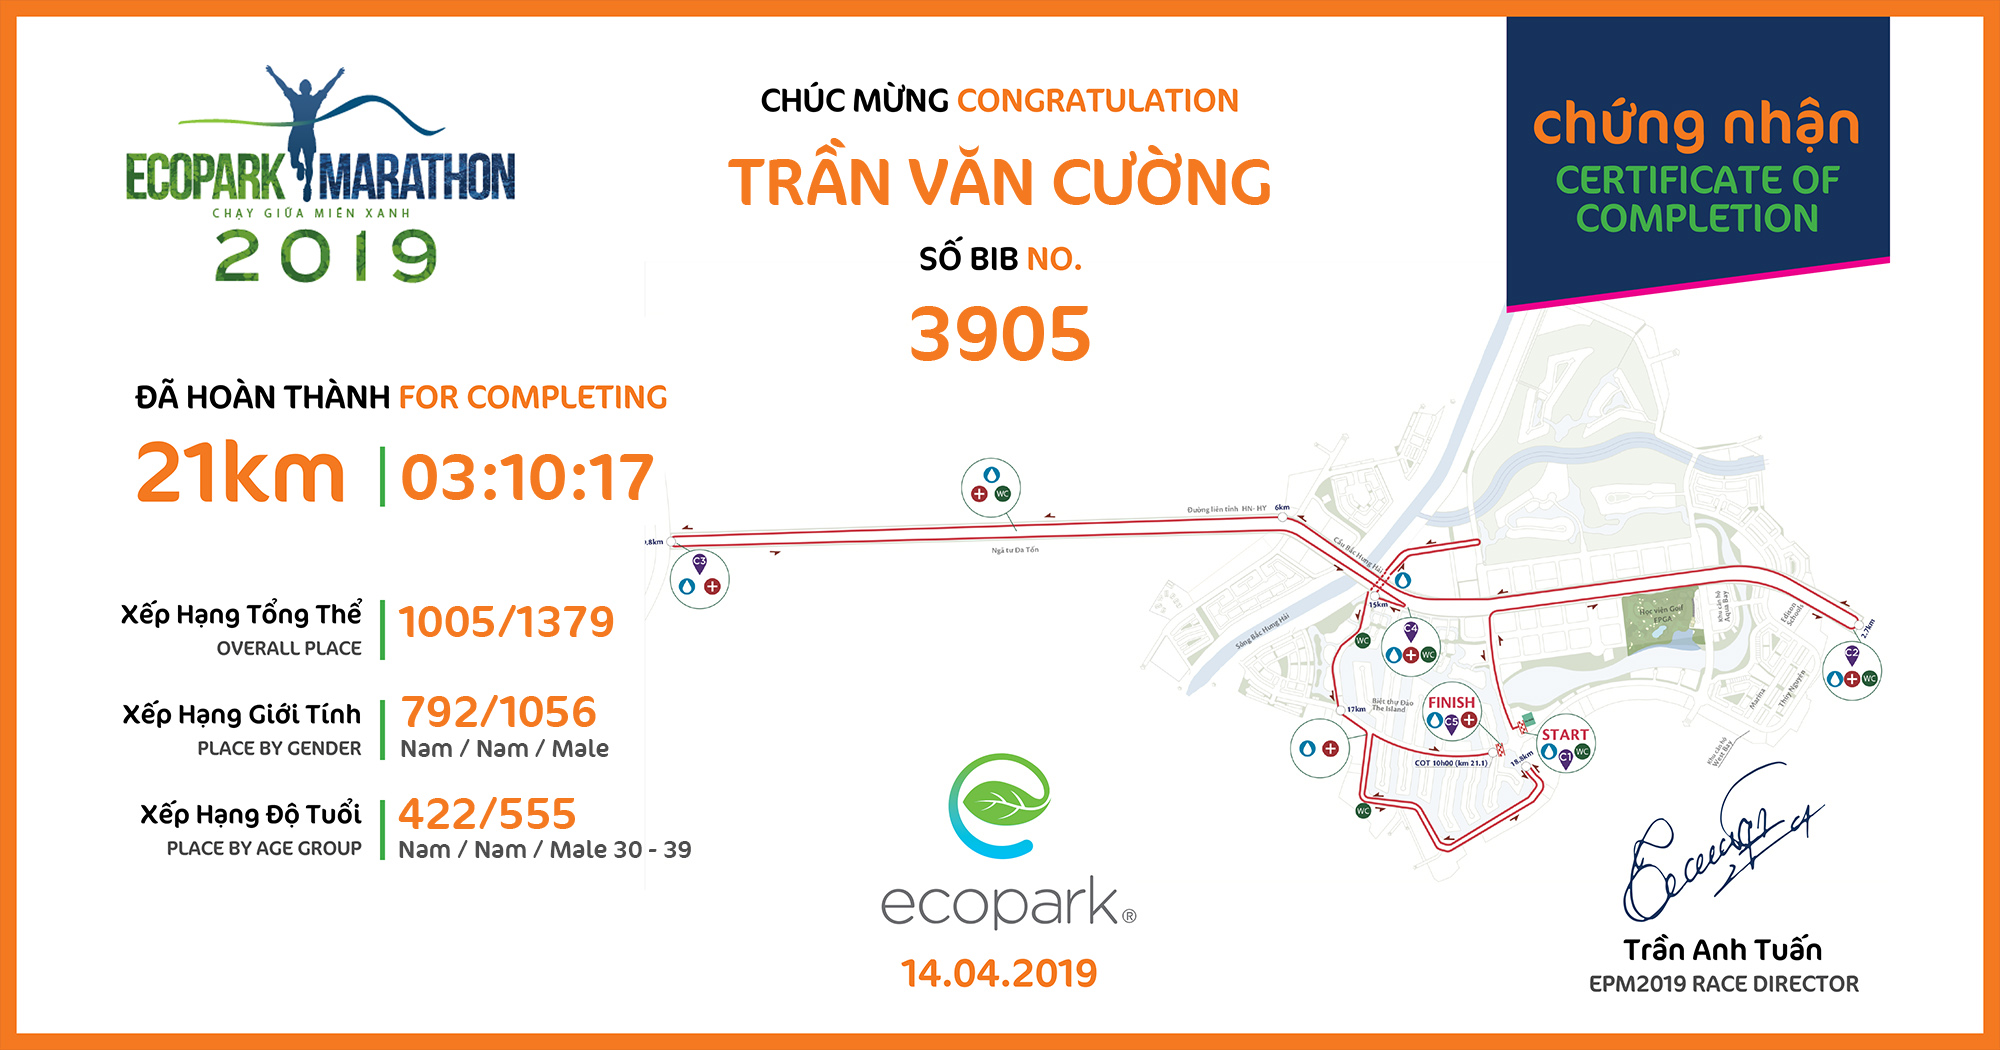 3905 - Trần Văn Cường